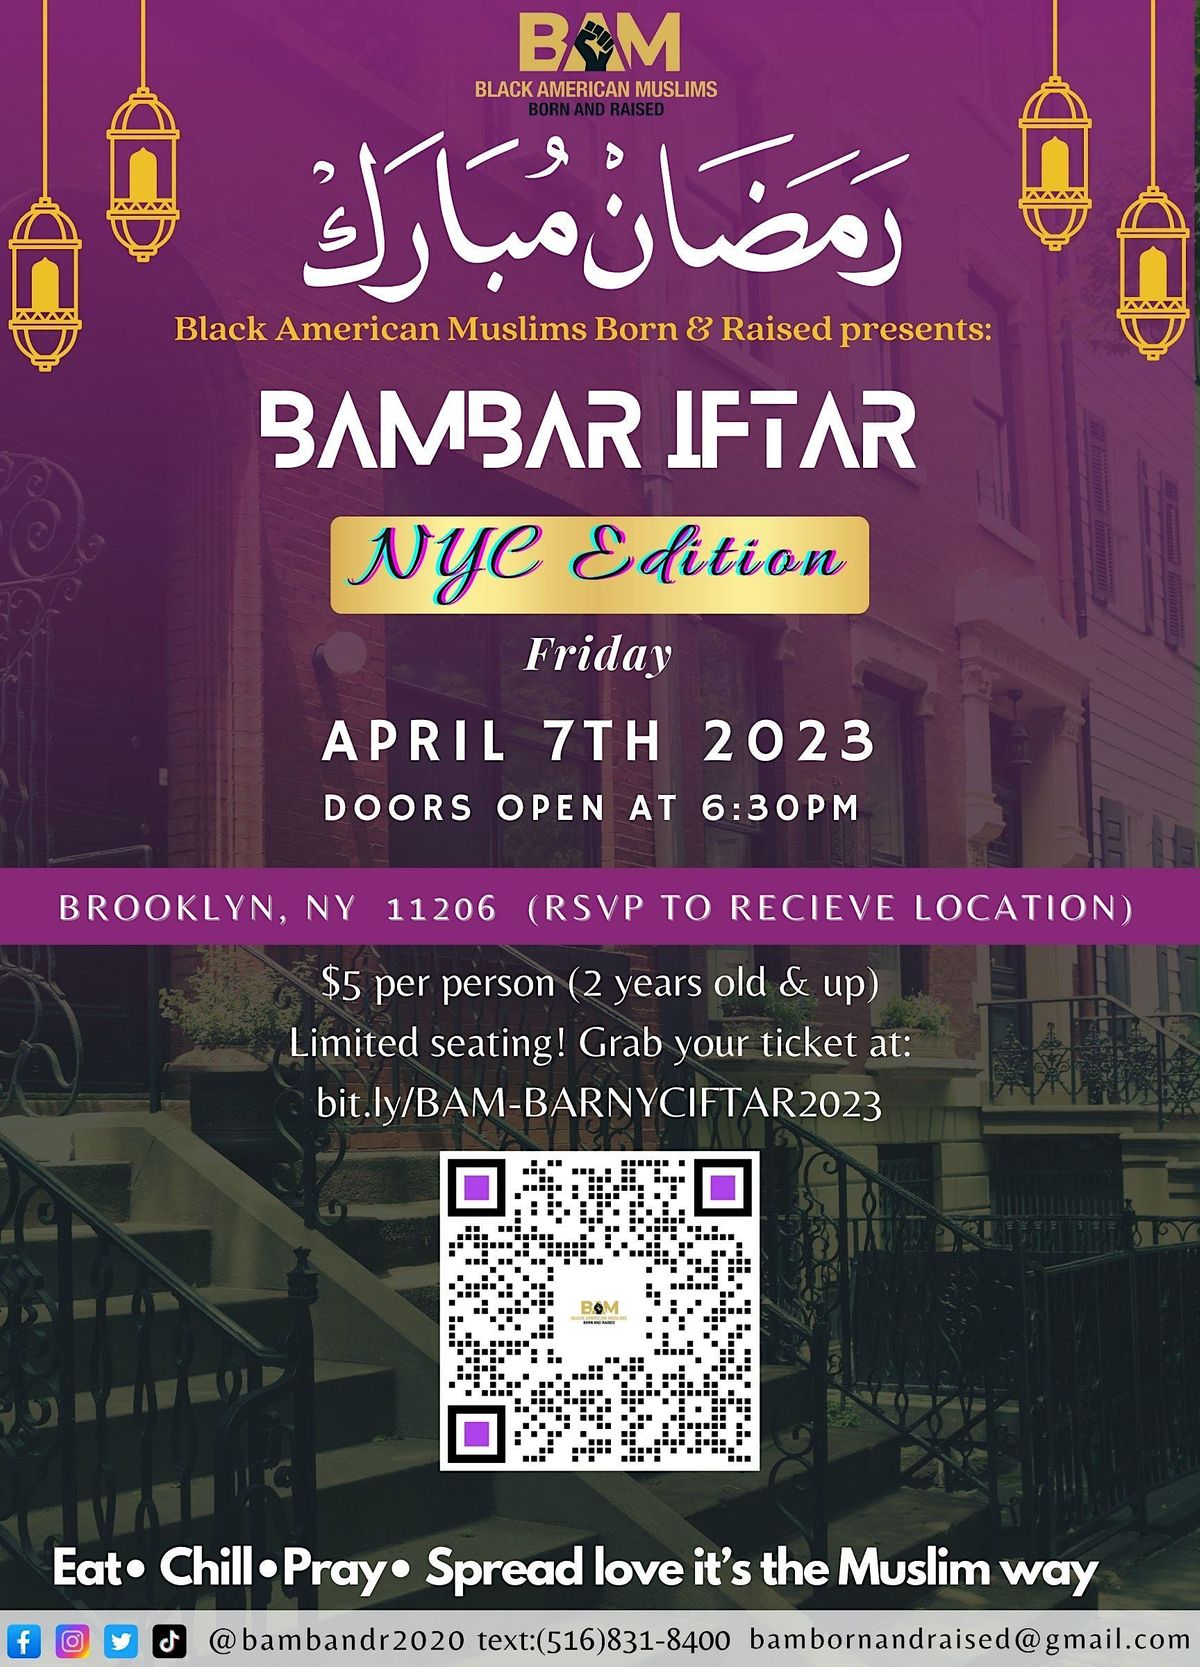 BAMBAR IFTAR 2023 NYC Edition Brooklyn April 7, 2023